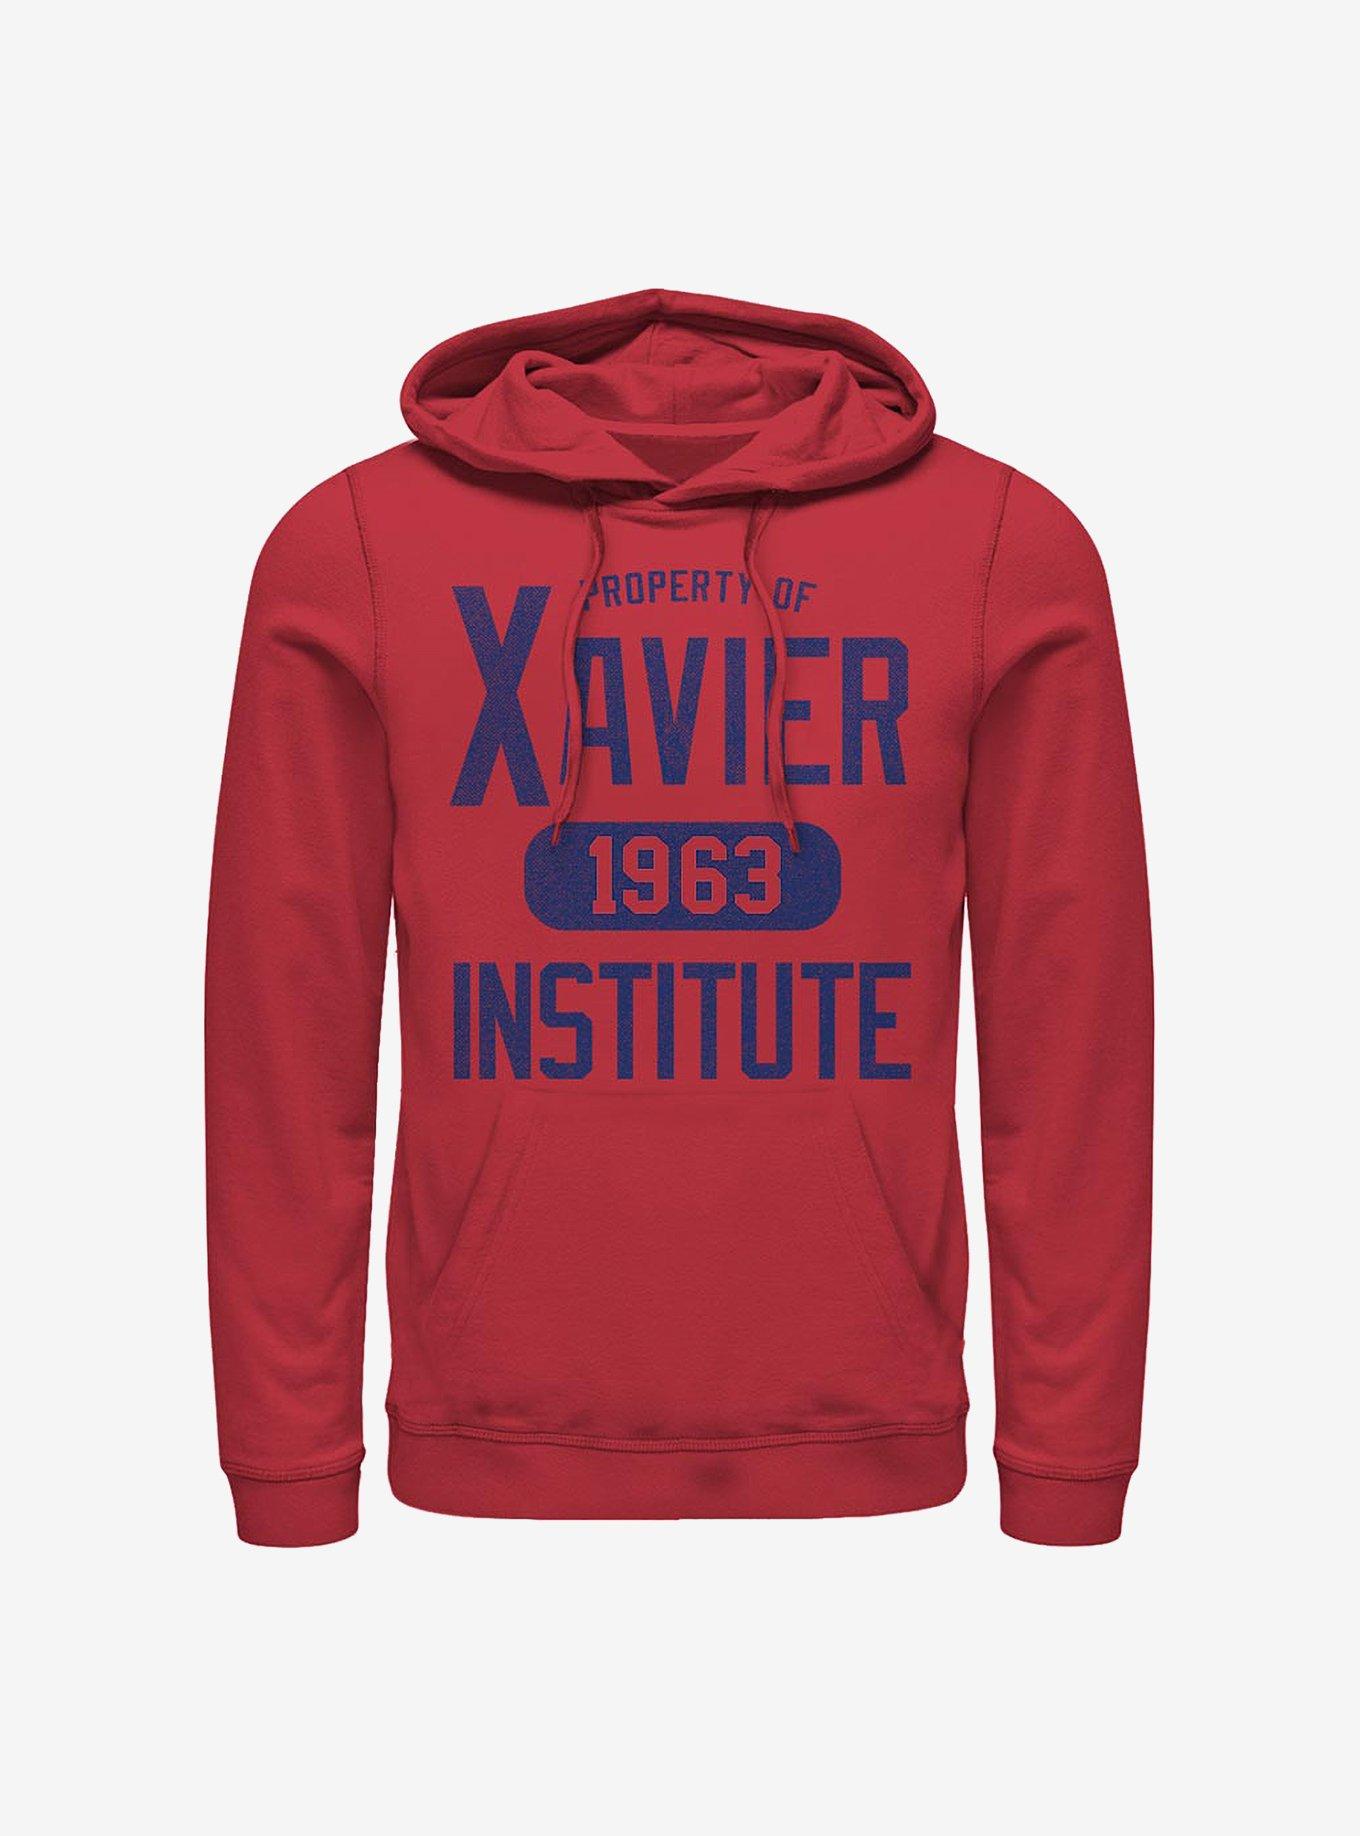 Marvel X-Men Varsity Property Of Xavier Hoodie, RED, hi-res